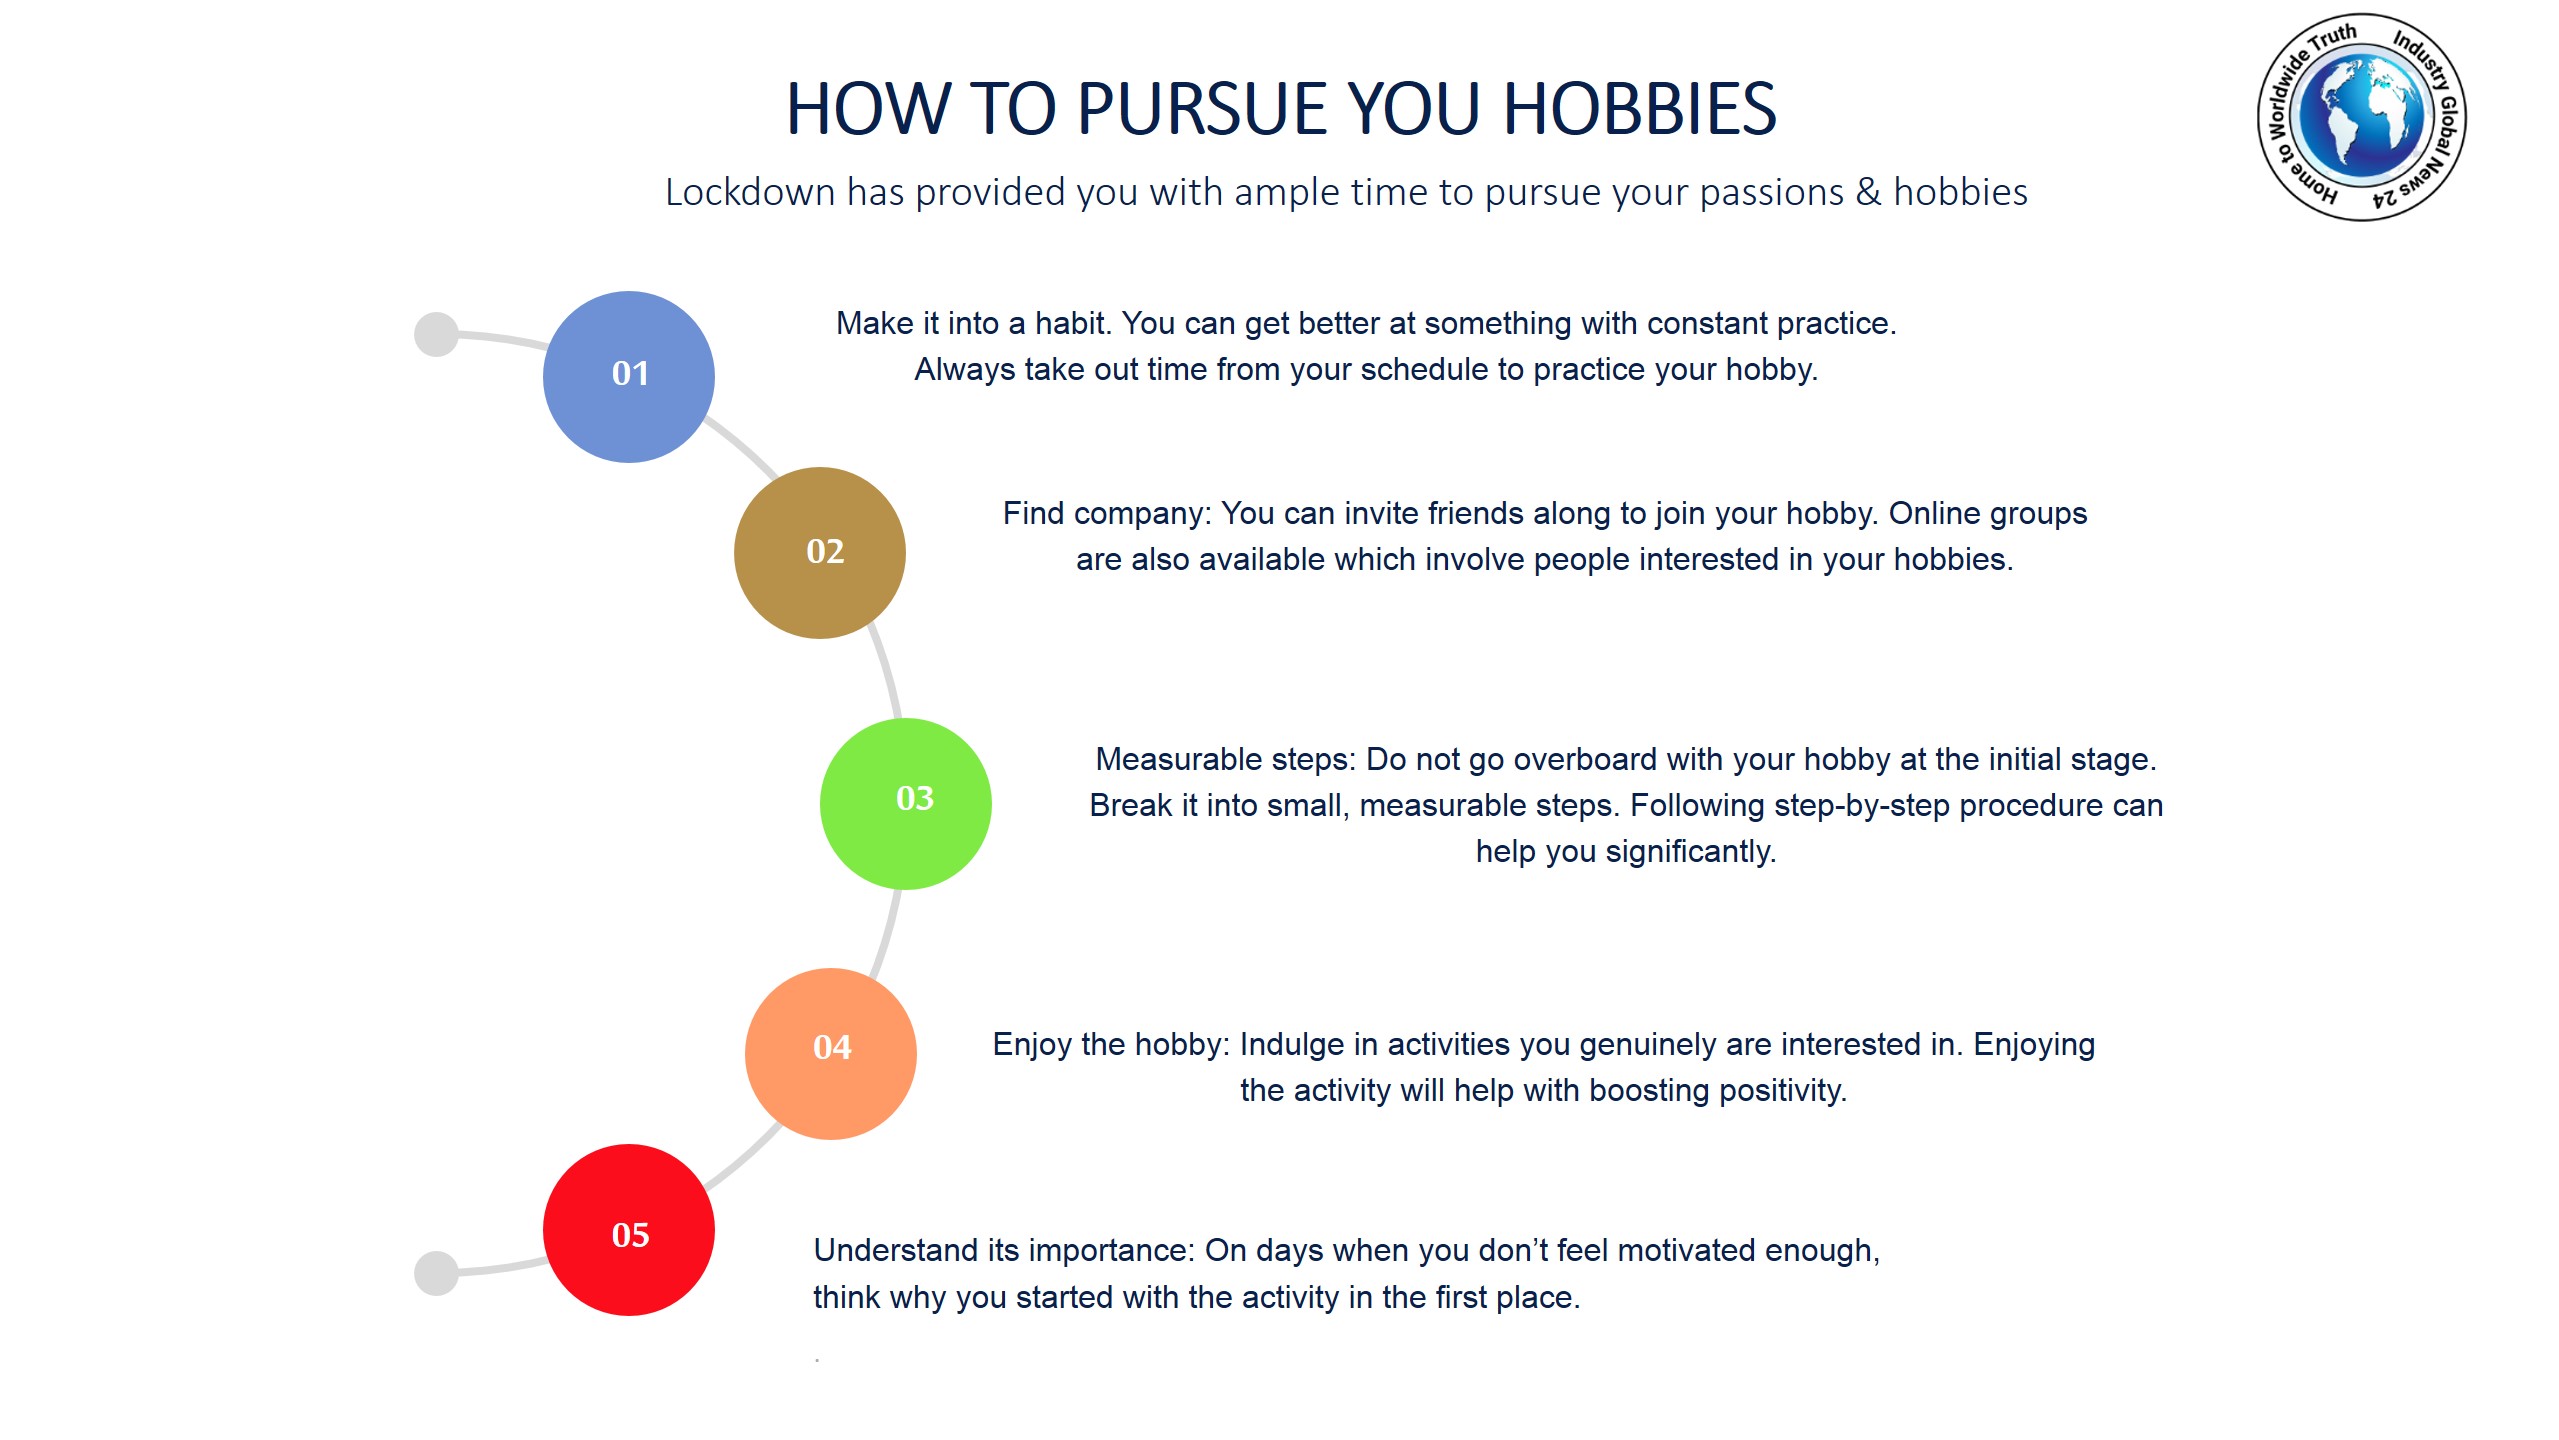 How to pursue you hobbies